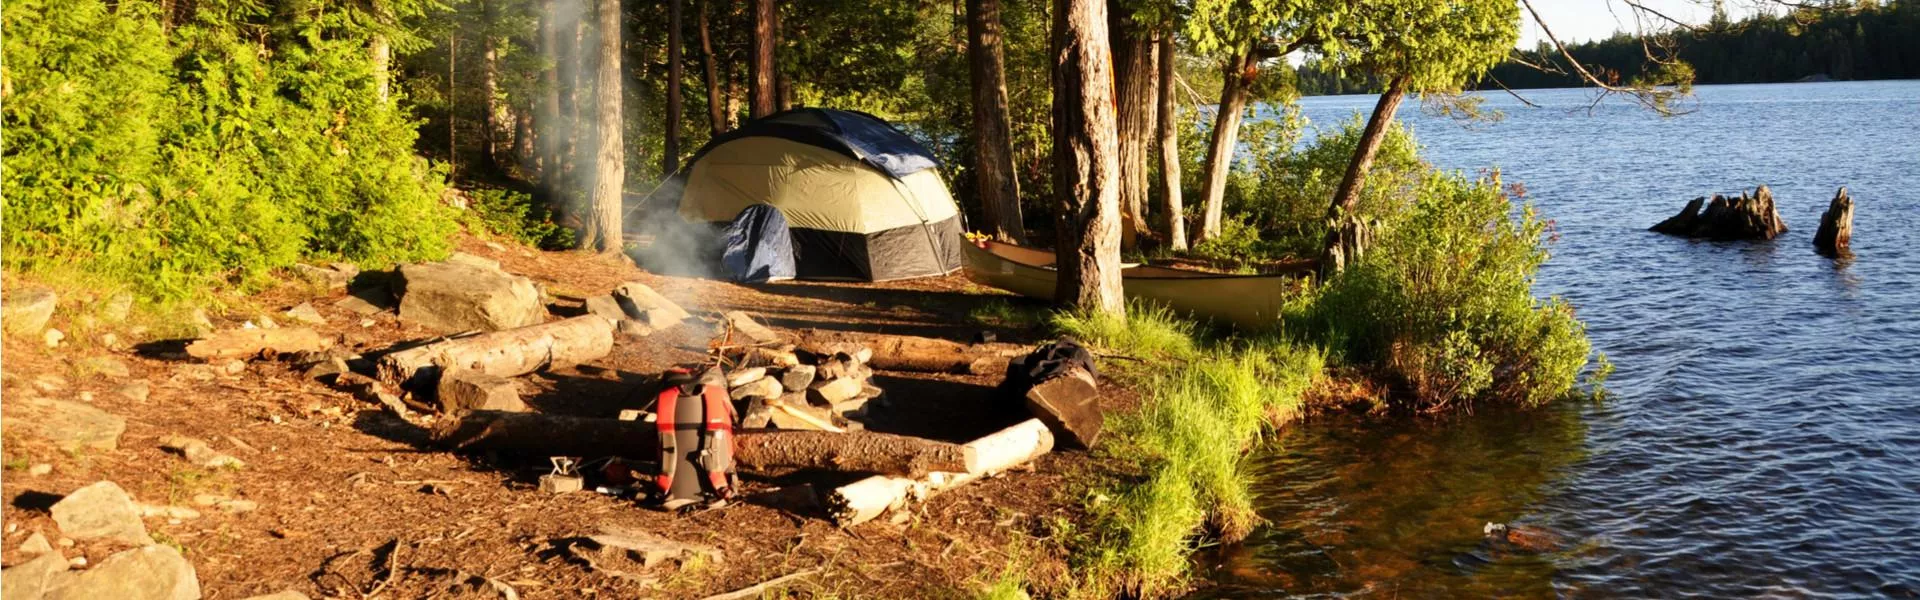 Een relaxte vakantie op een groene camping in Frankrijk